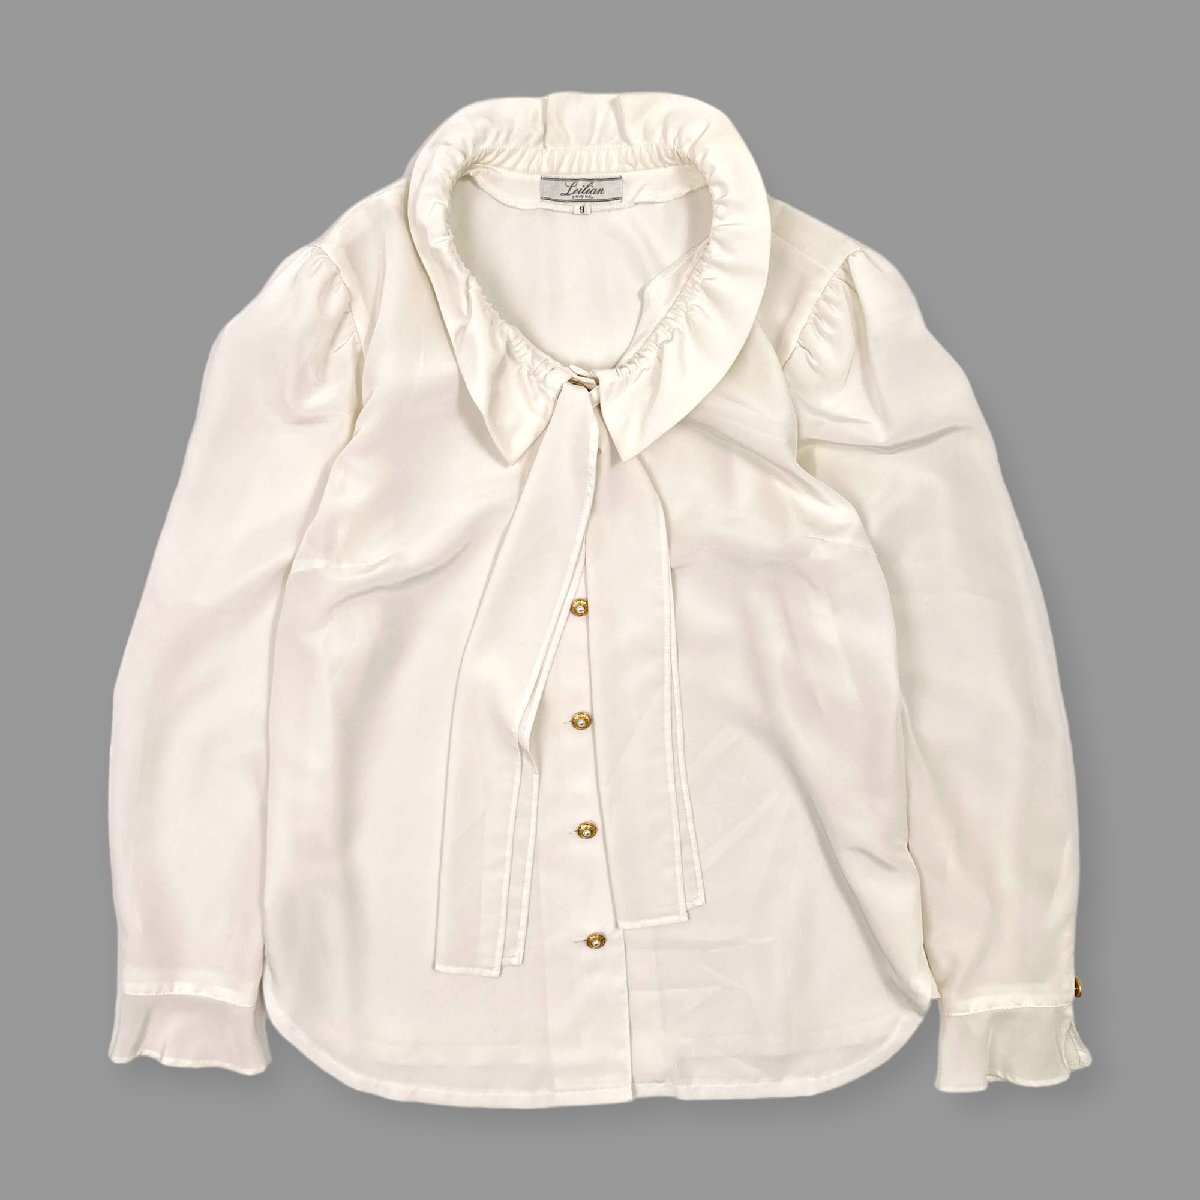 Leilian レリアン ボウタイ フリル リボン 長袖 ブラウス シャツ デザインボタン サイズ 9 / 白 ホワイト レディース 日本製_画像2